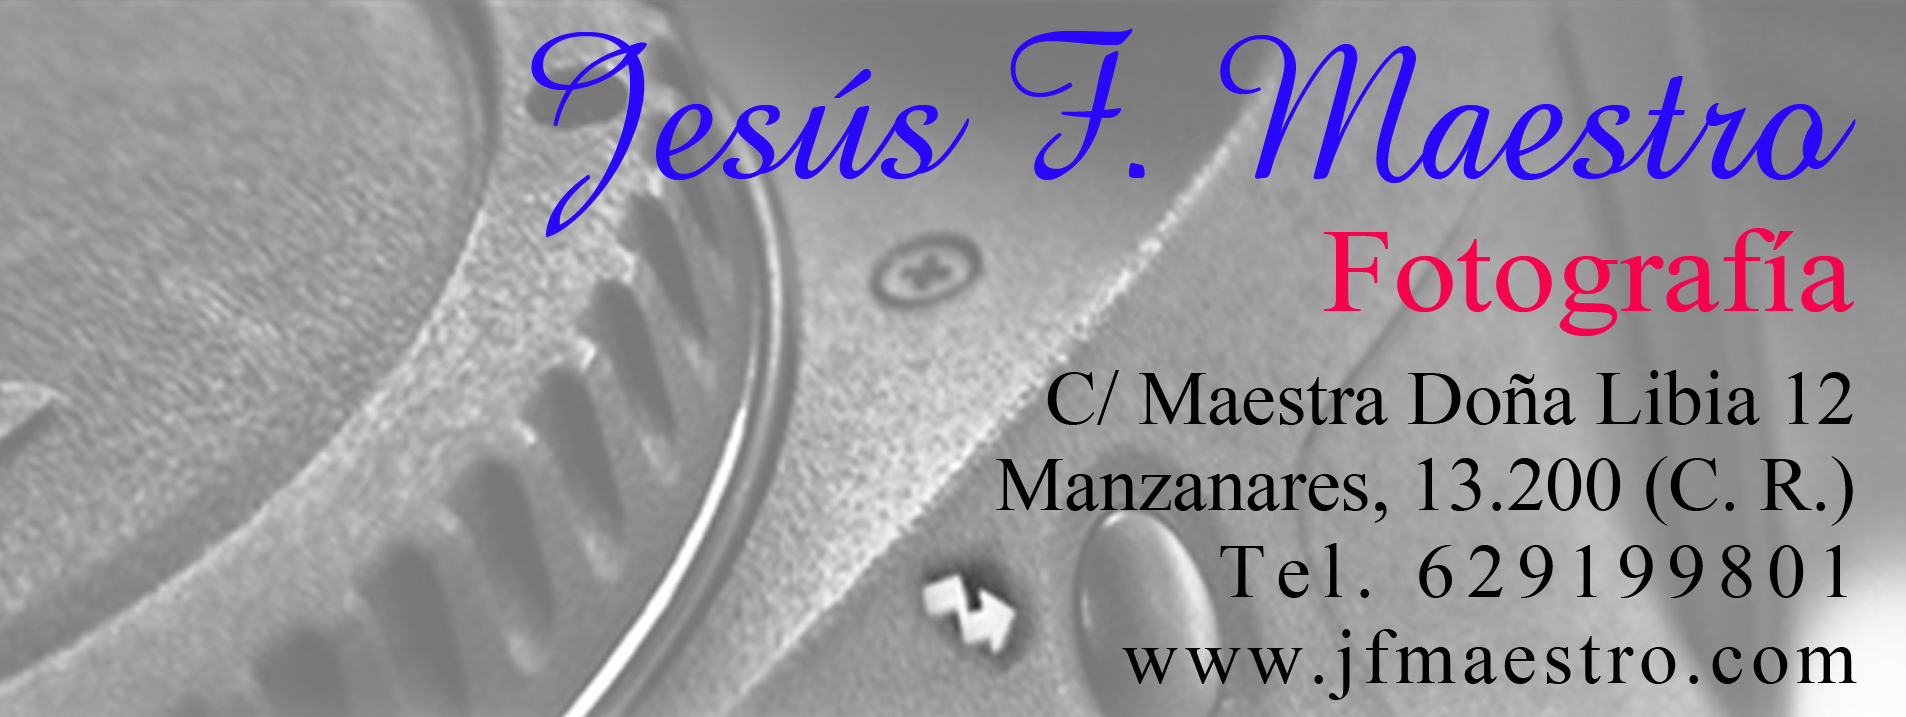 Jesús F Maestro Fotografia, patrocinador oficial